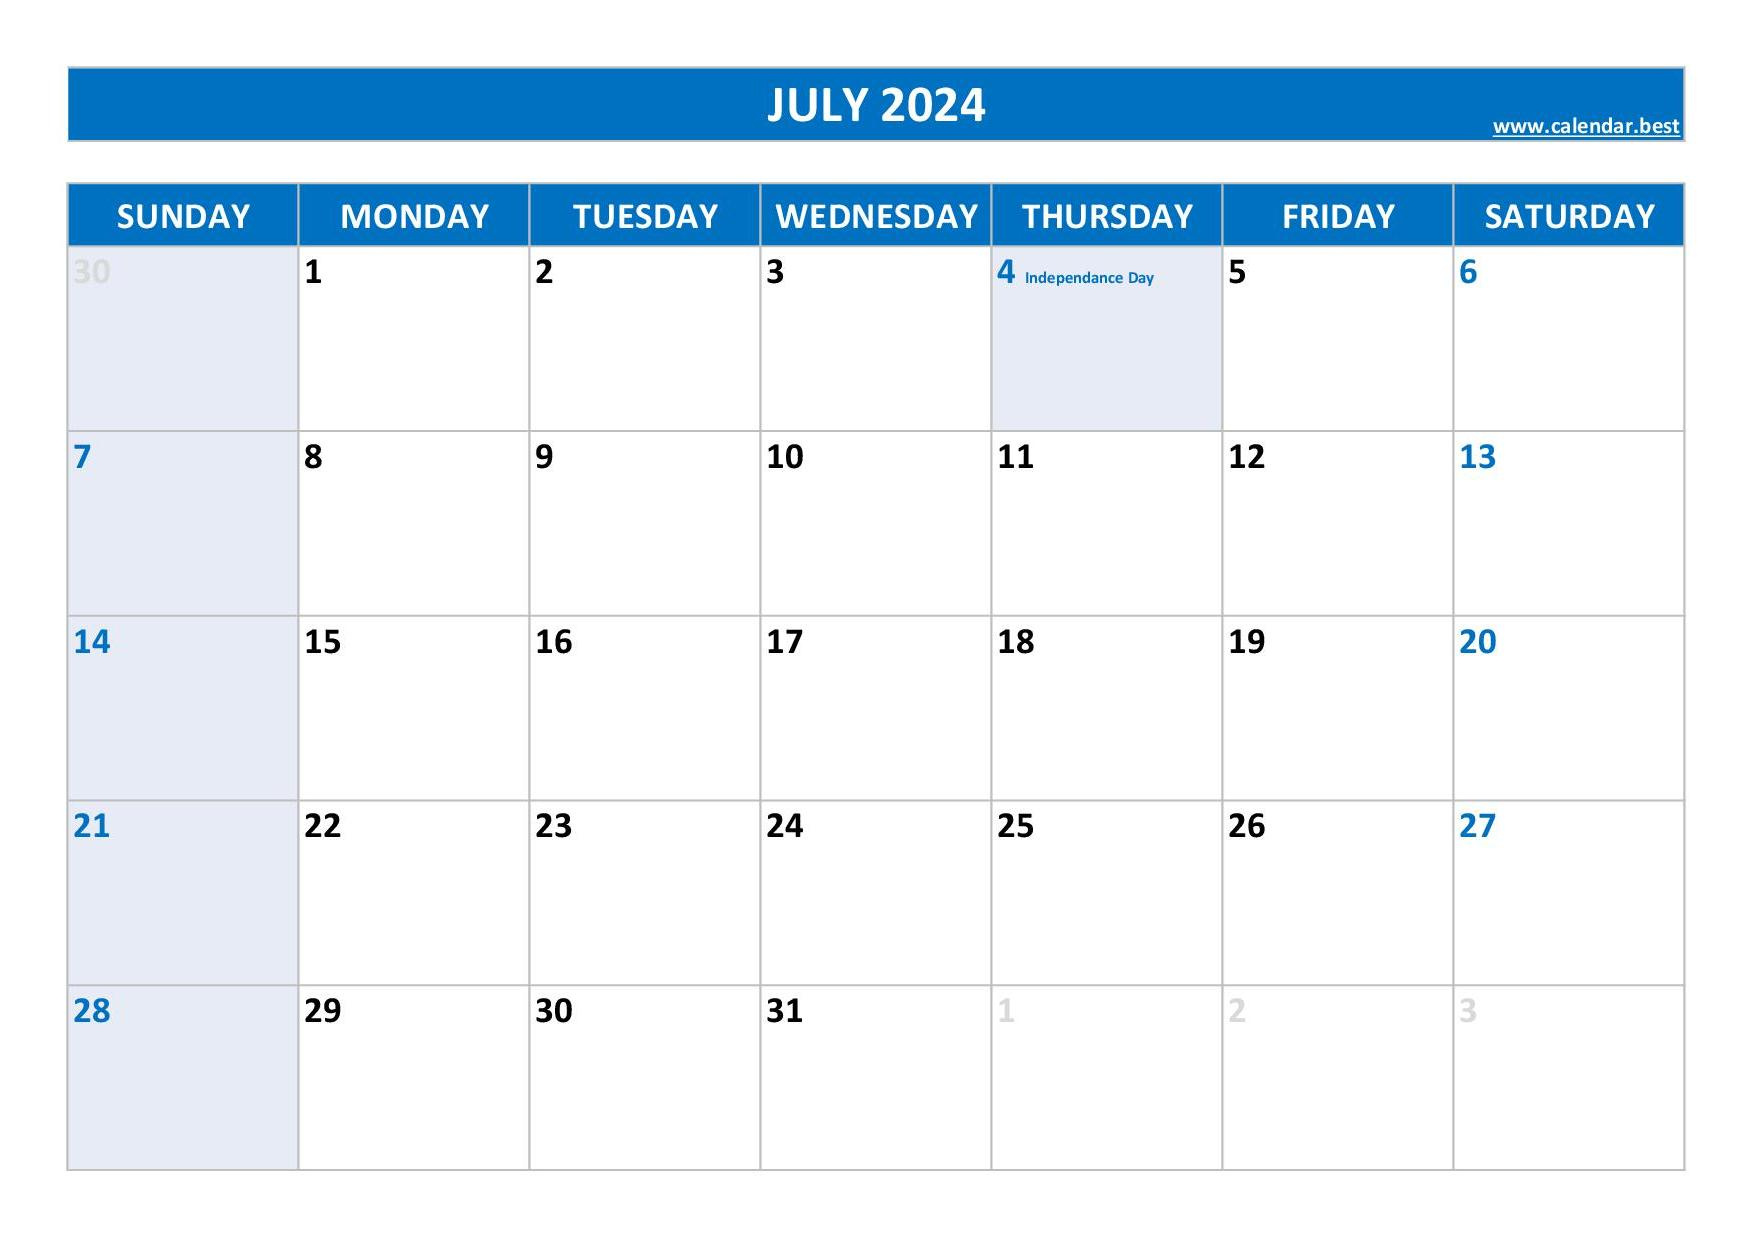 July 2024 Calendar -Calendar.best pertaining to July 1St Holiday Calendar 2024